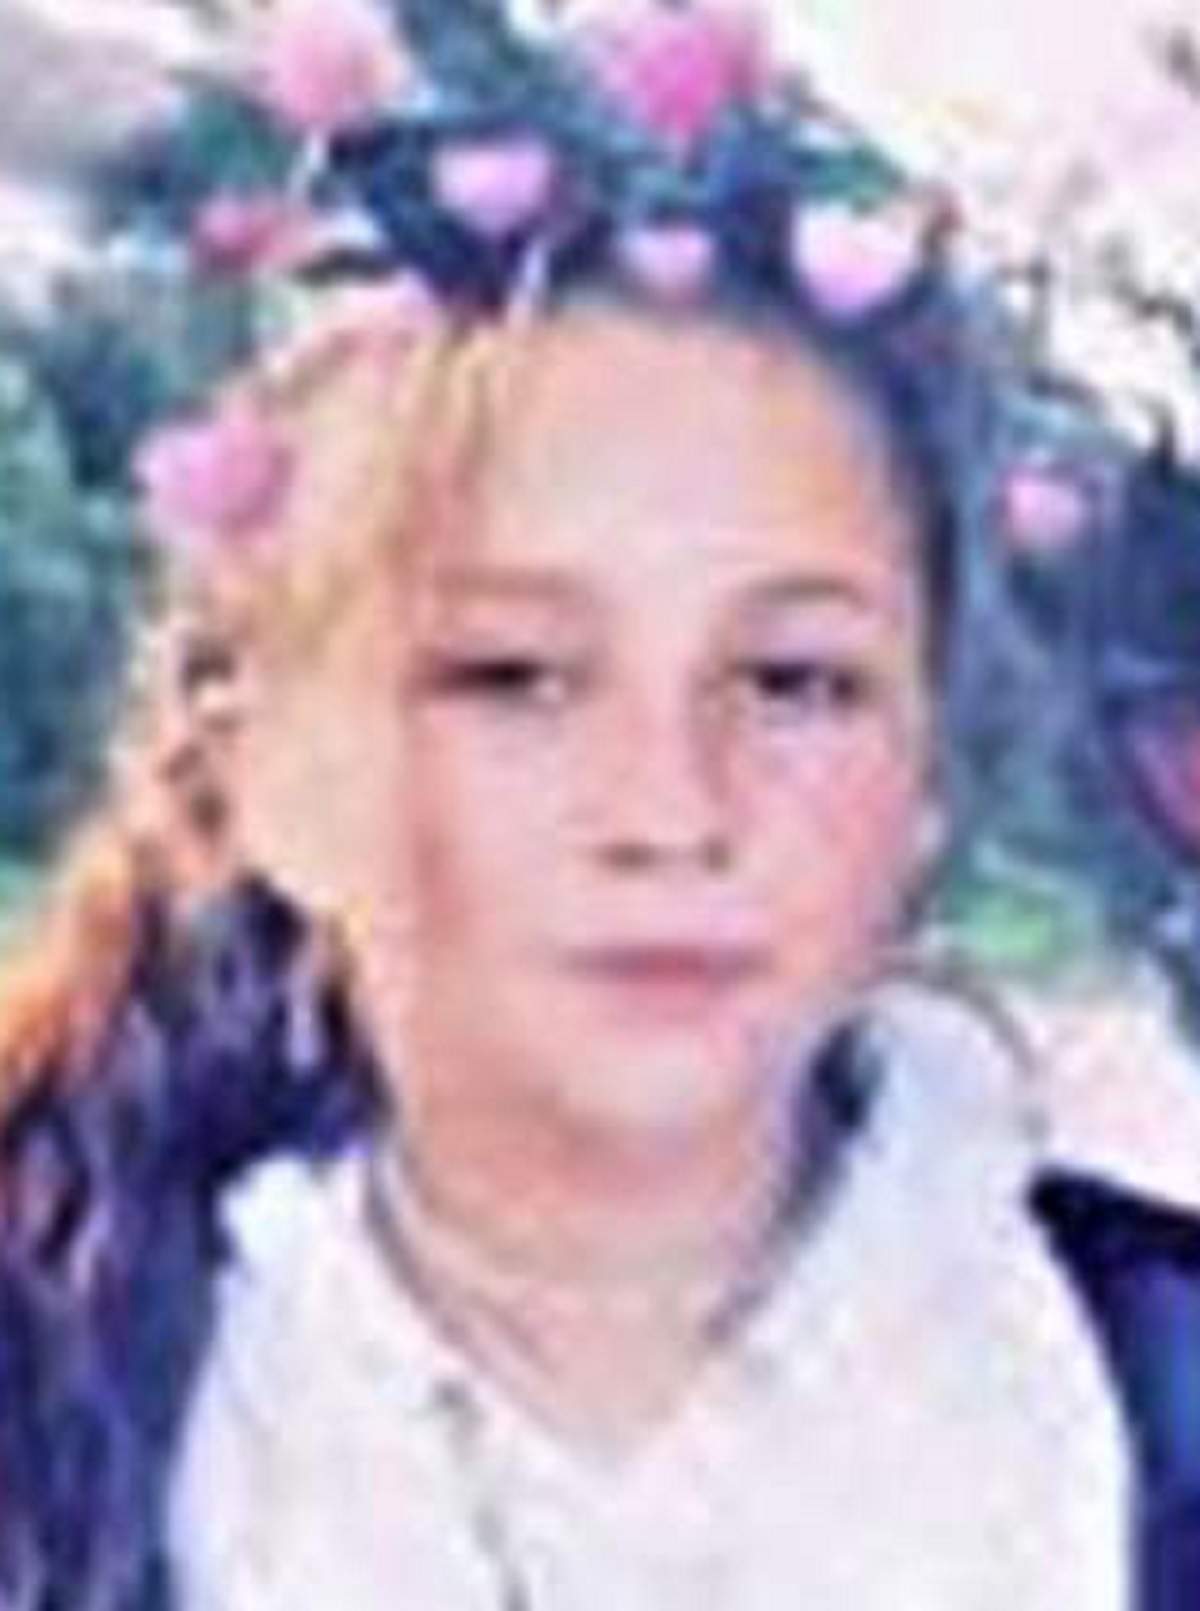 Minoră de 13 ani din Sibiu, dispărută fără urmă! Părinții sunt disperați